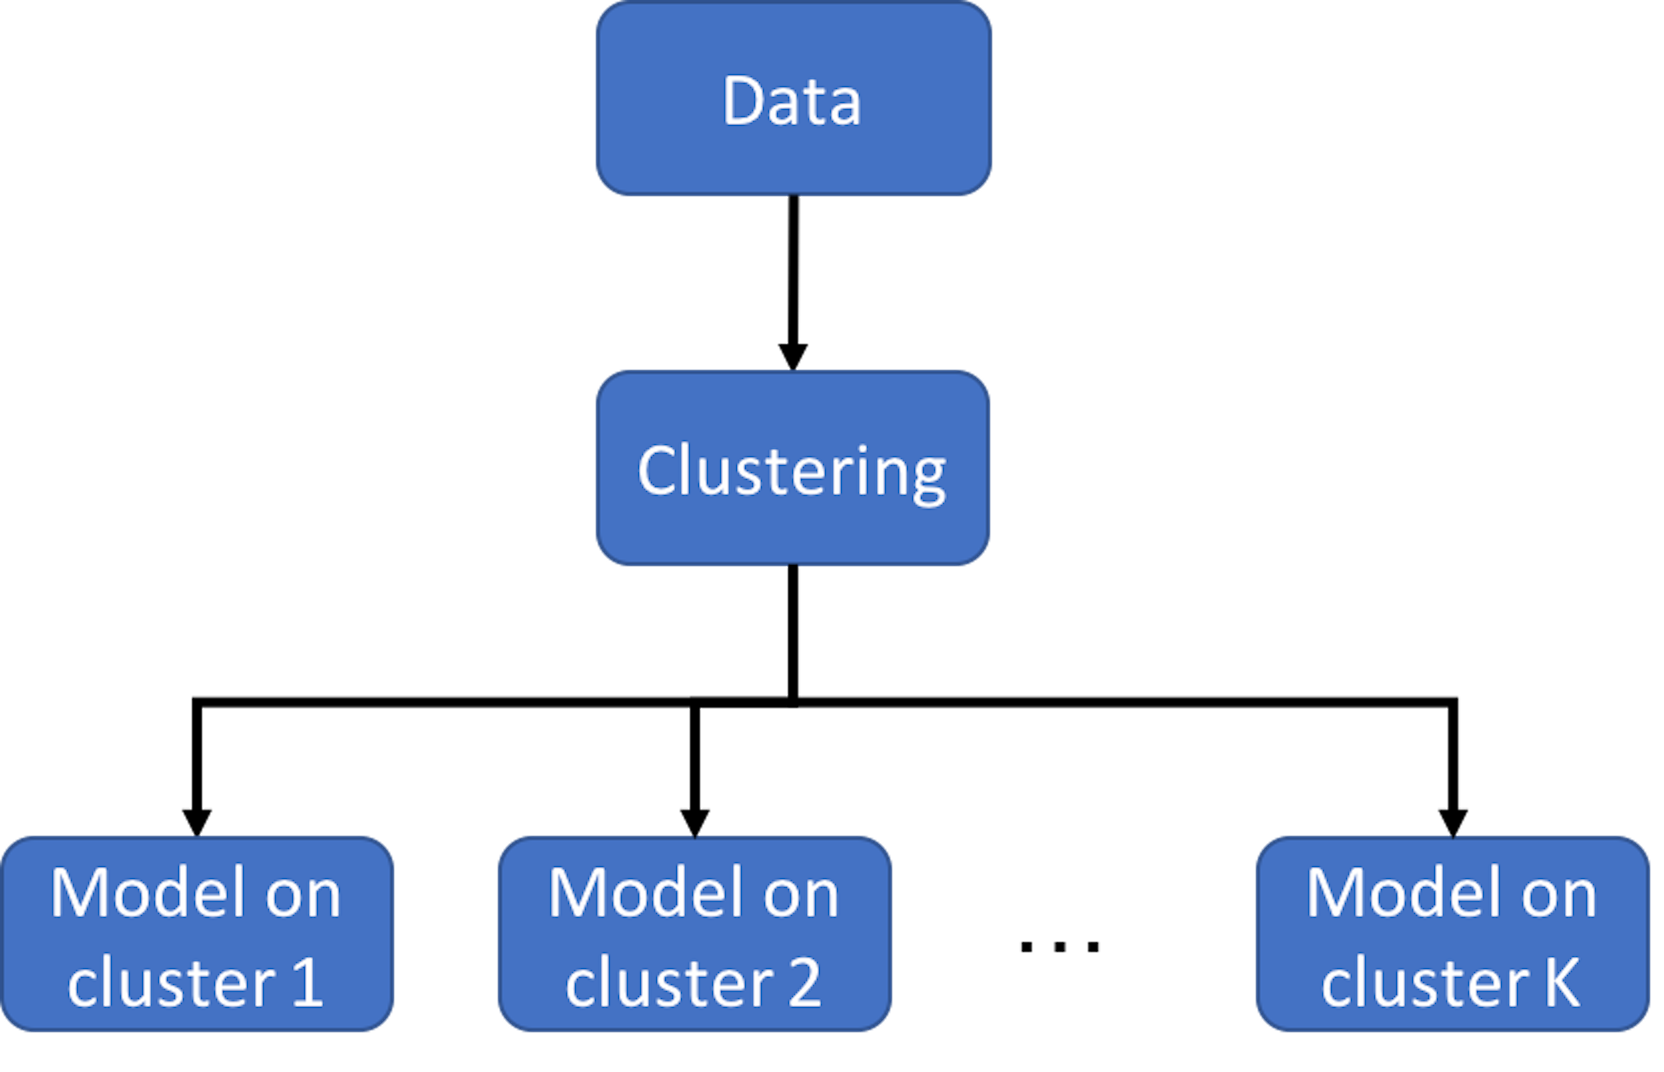 Clustering-based prediction models